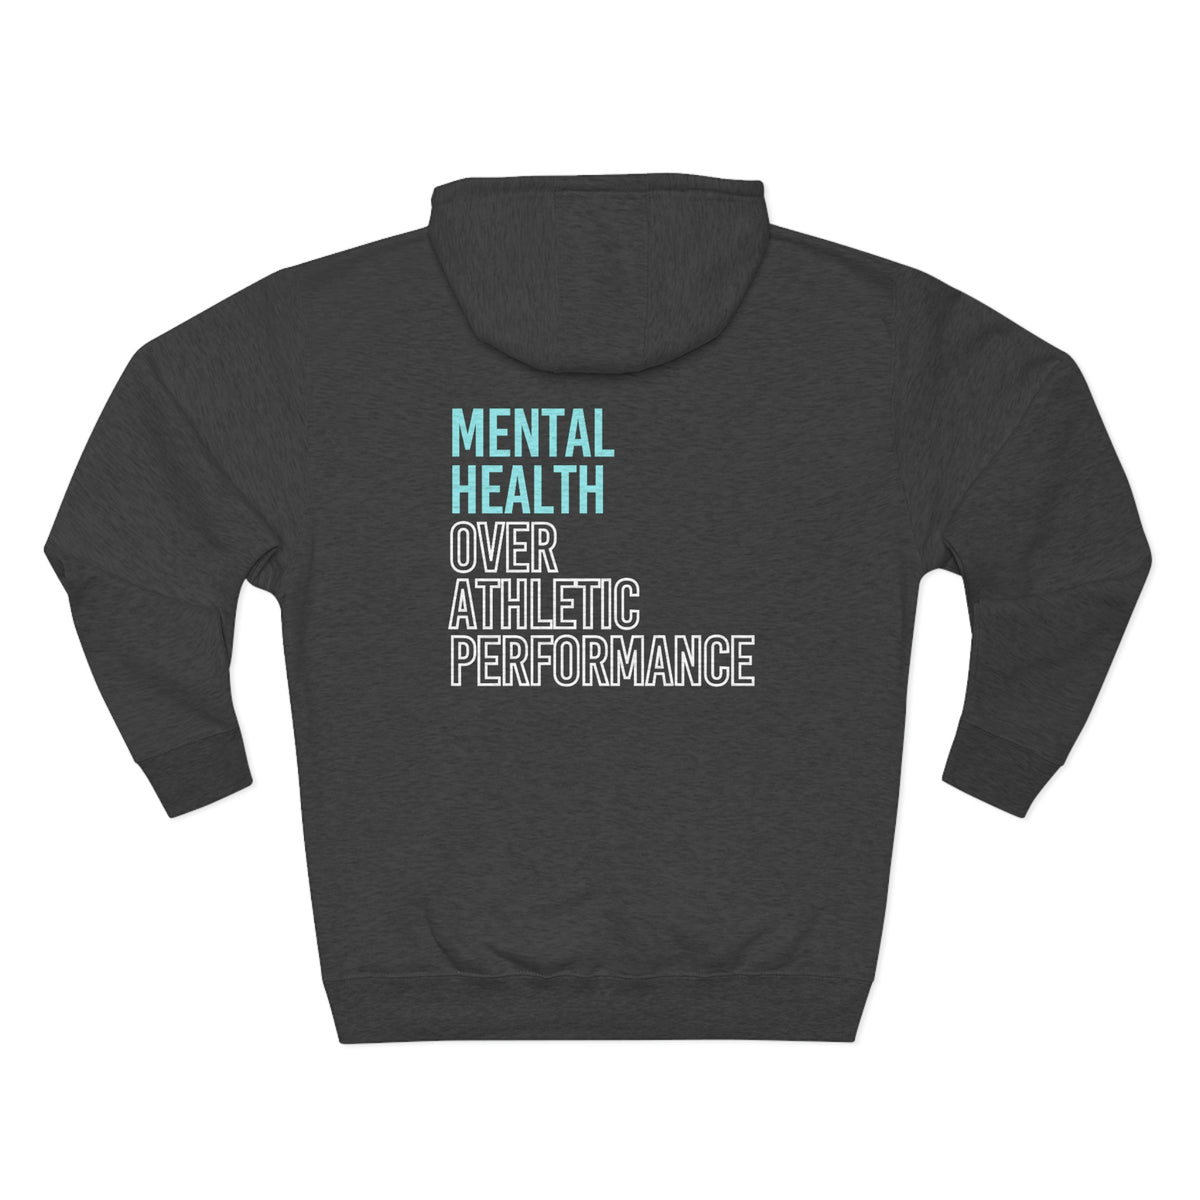 Mental Heath Over Athletic Performance Adult Hooded Sweatshirt